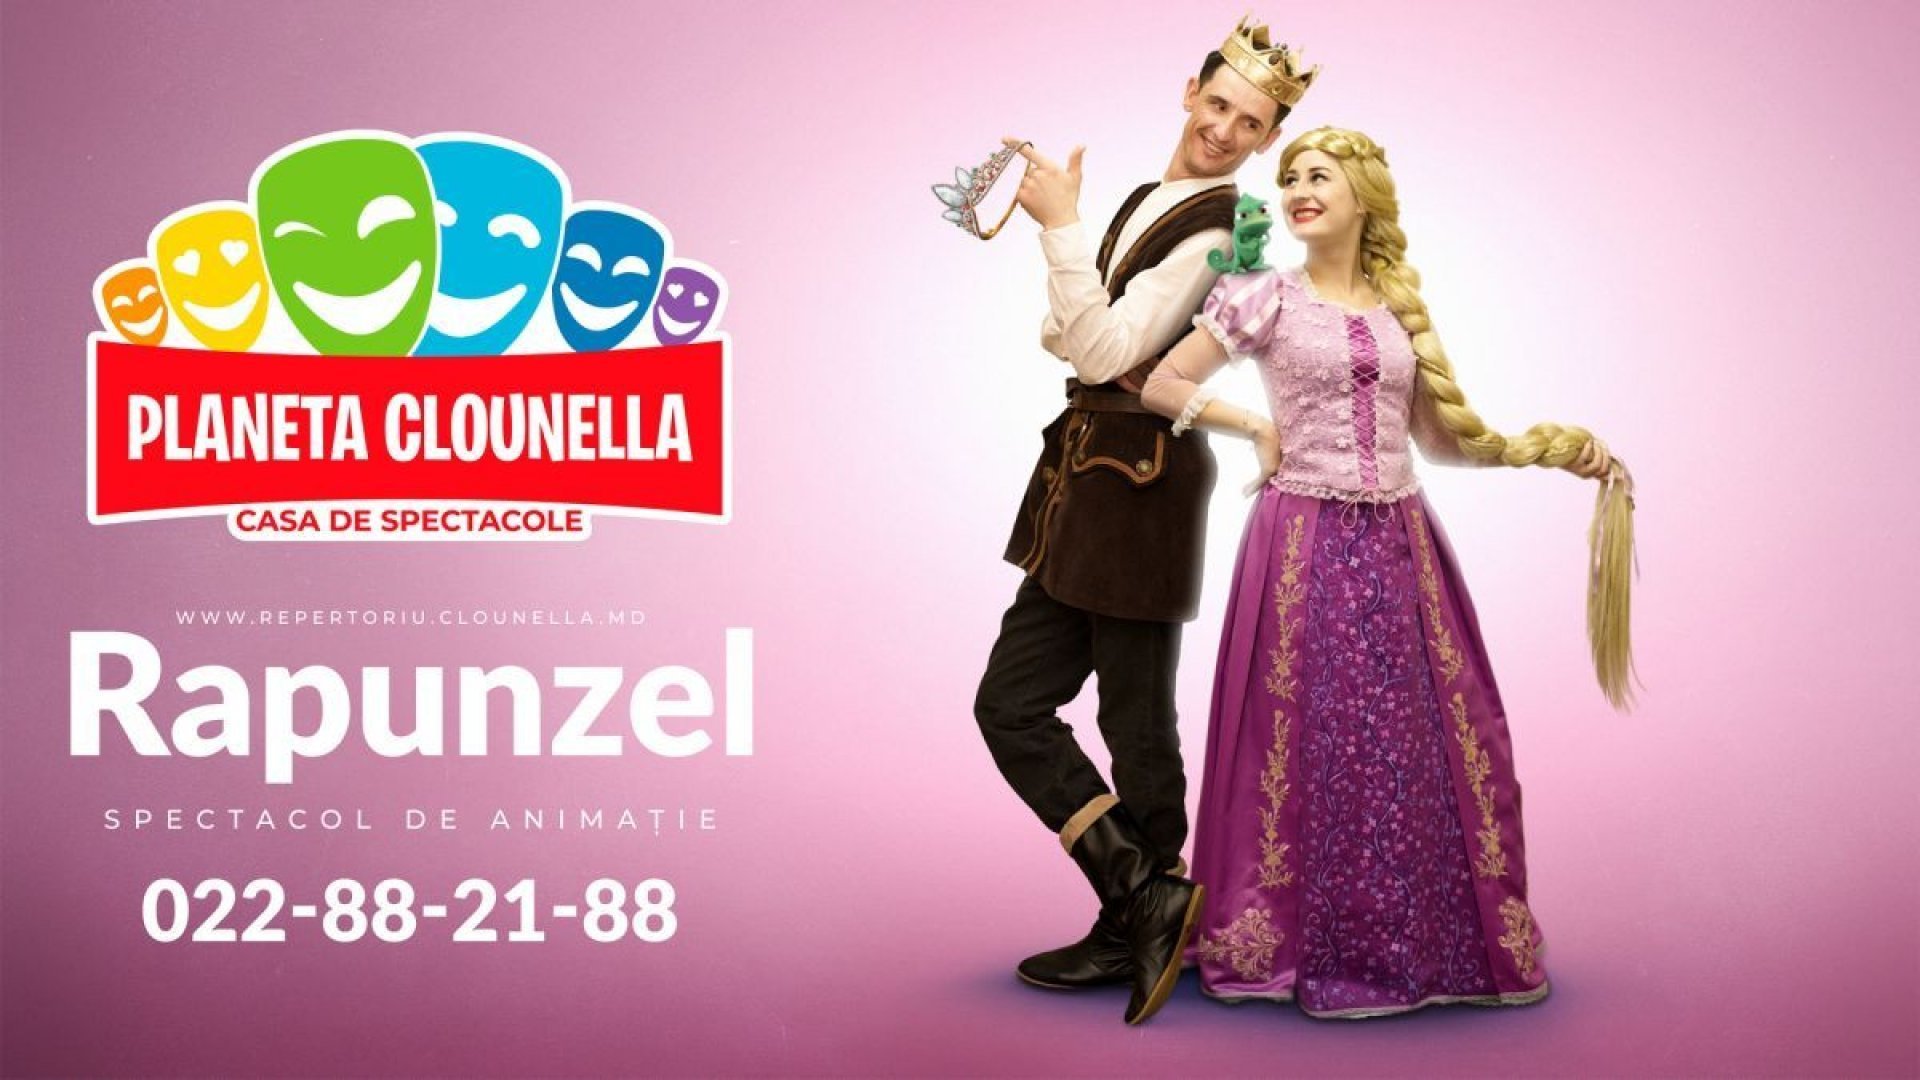 Rapunzel - Spectacol pentru Copii ( Acces Spectacol Online - 44 lei pentru 1 zi ) | +3